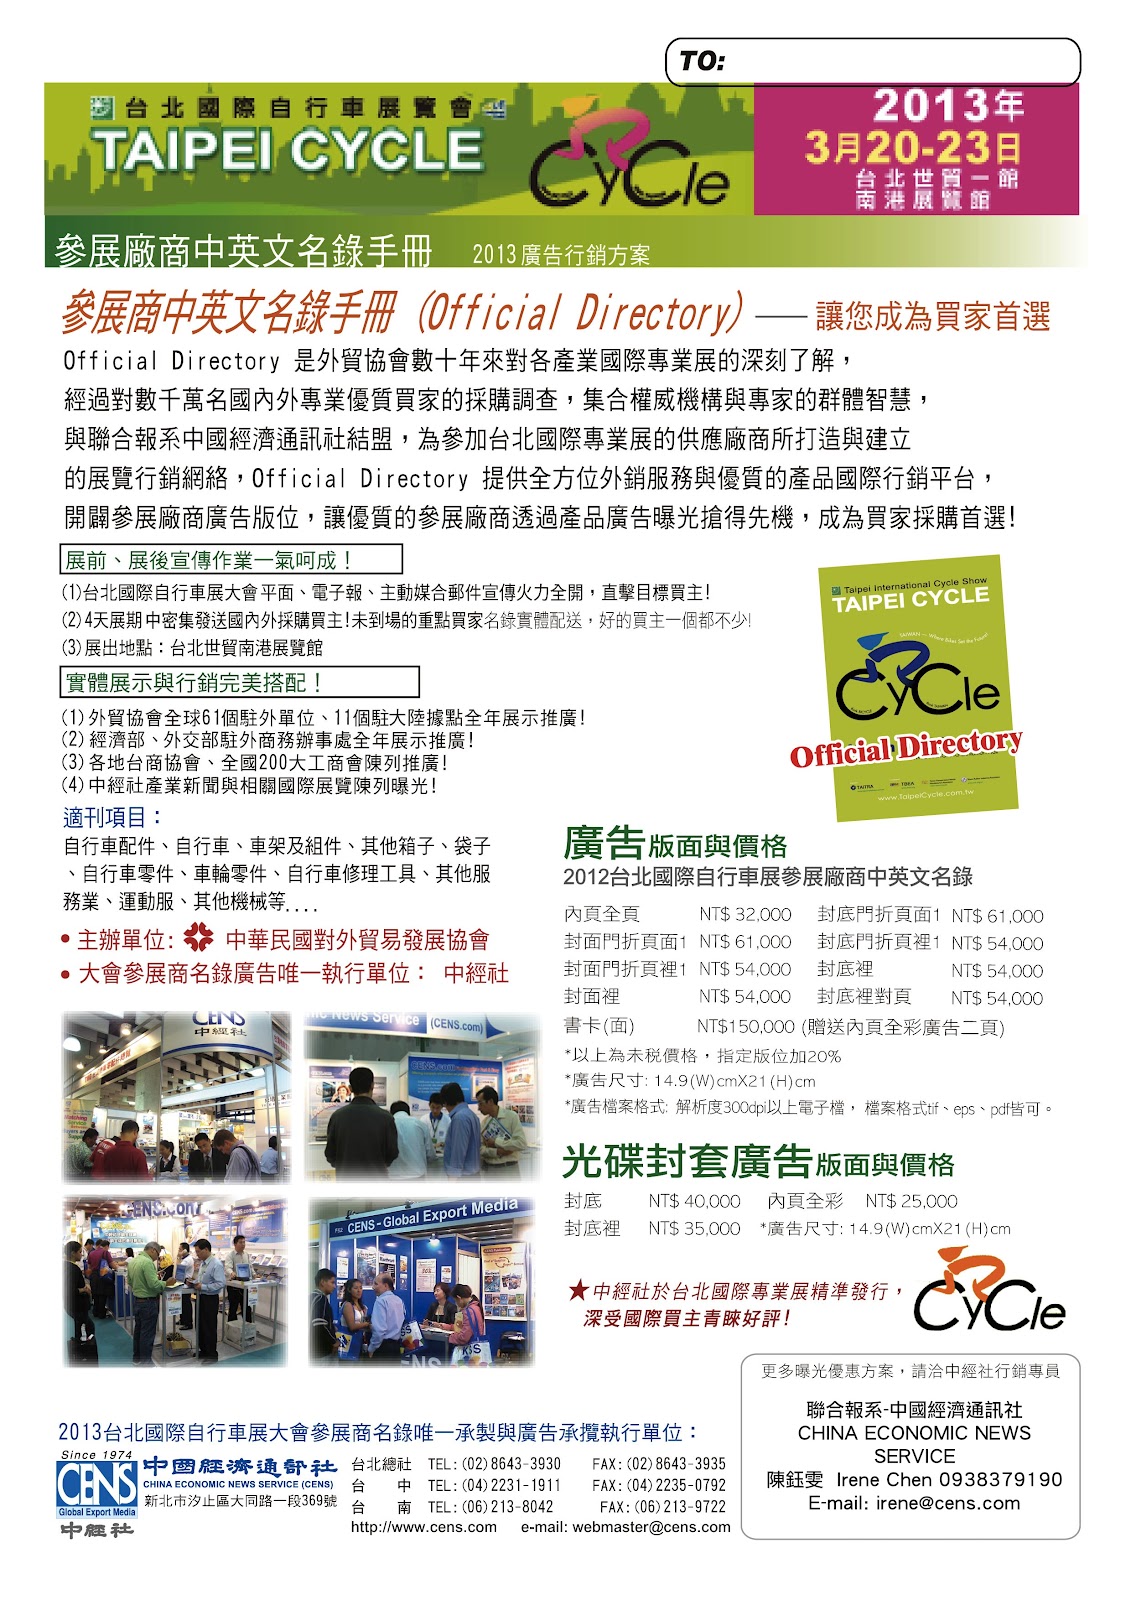 2013 台北國際自行車展覽會 參展廠商中英文名錄手冊 Official Directory